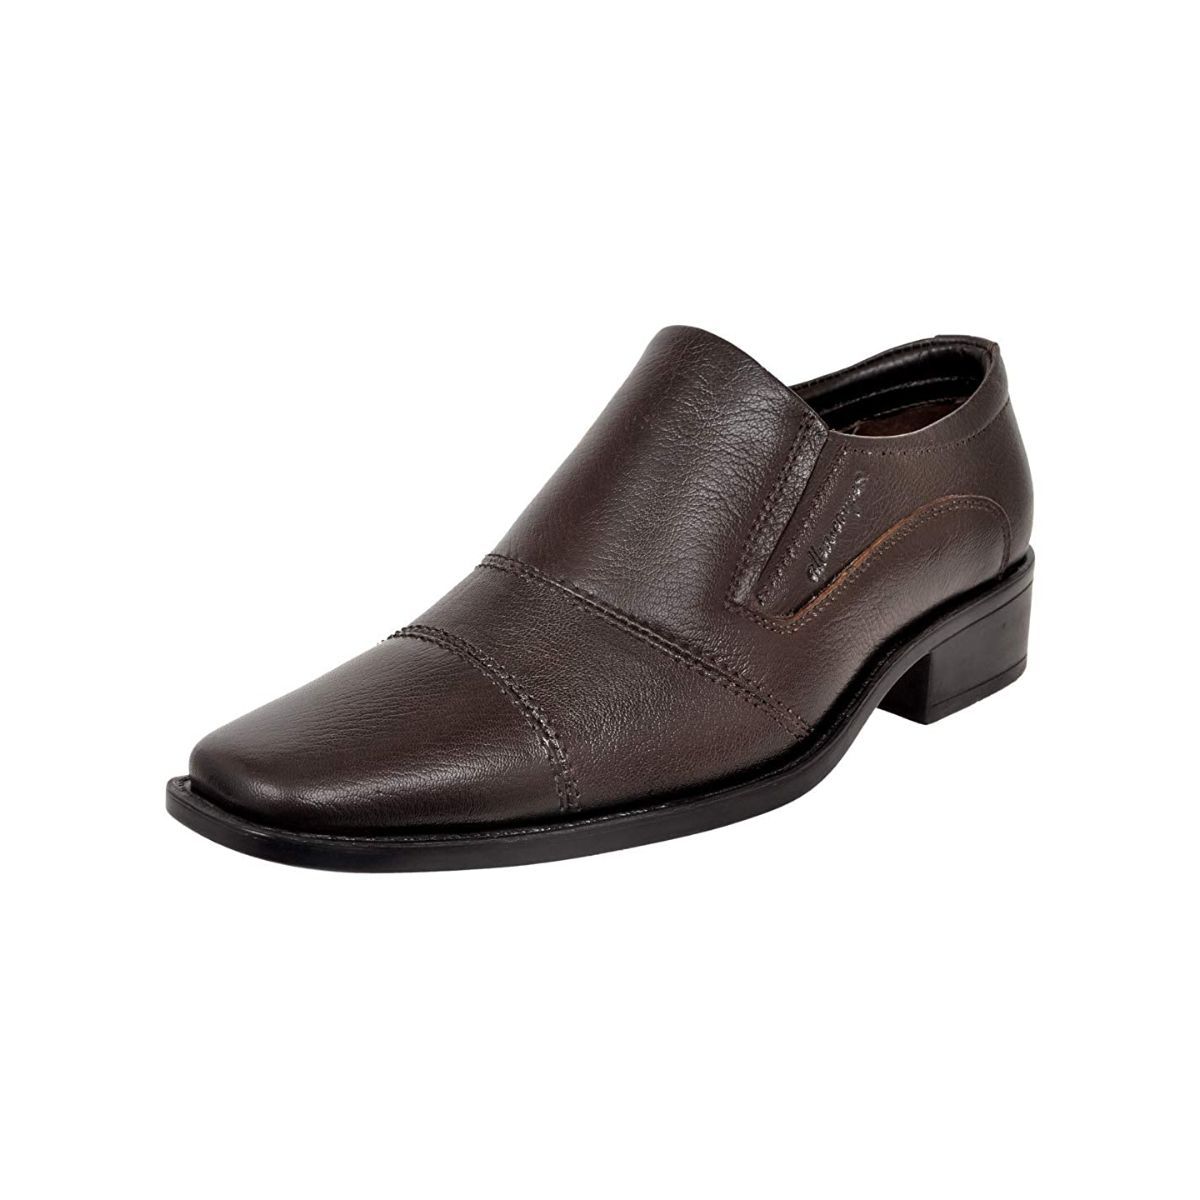 Allen Cooper Brown Formal Shoes For Men - 10